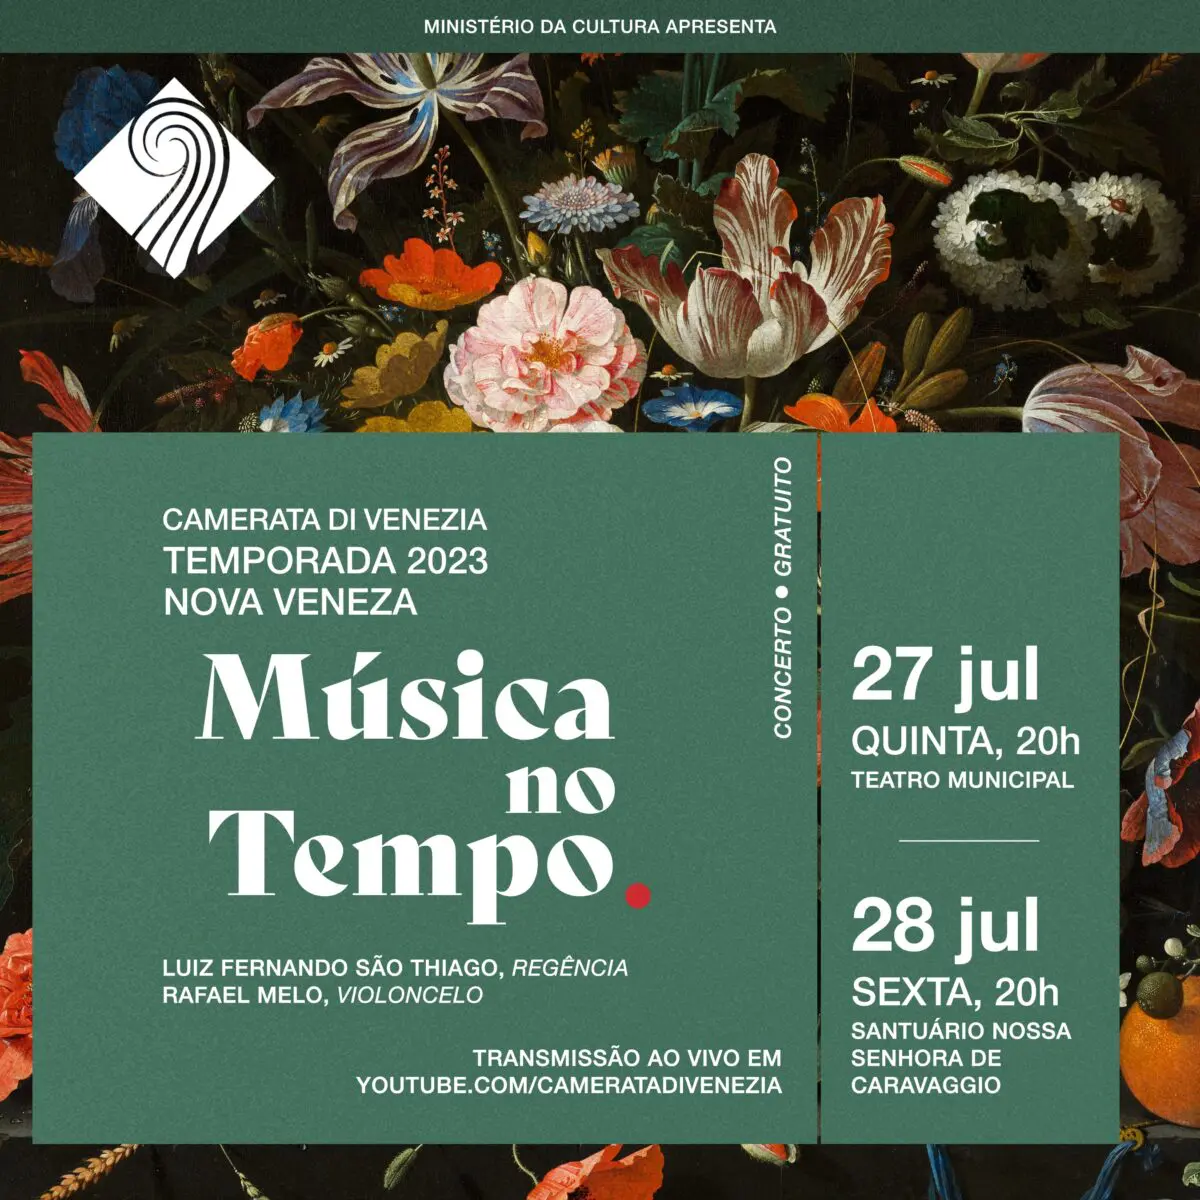 Camerata Di Venezia estreia série de concertos "Música no tempo"